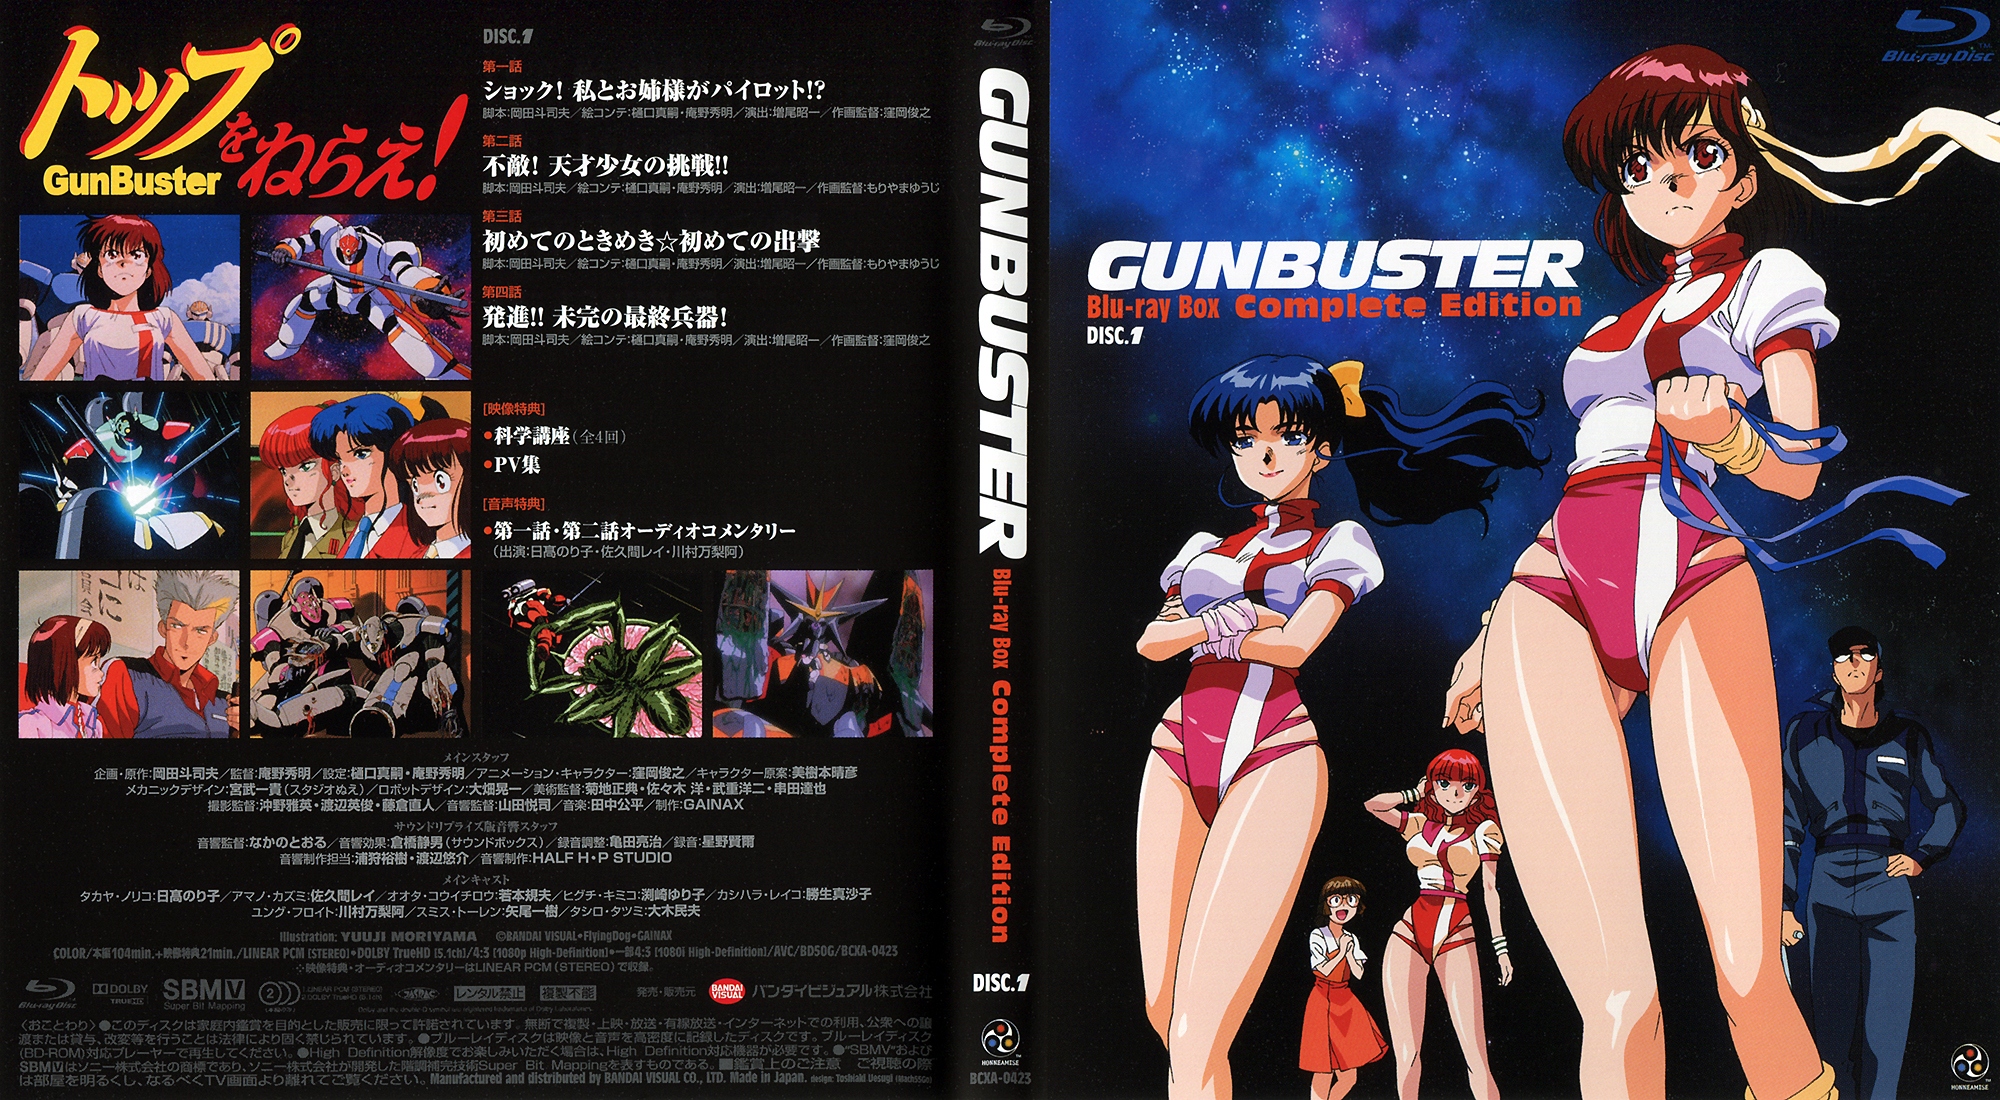 14 Quality Gunbuster Wallpapers, Anime & Manga